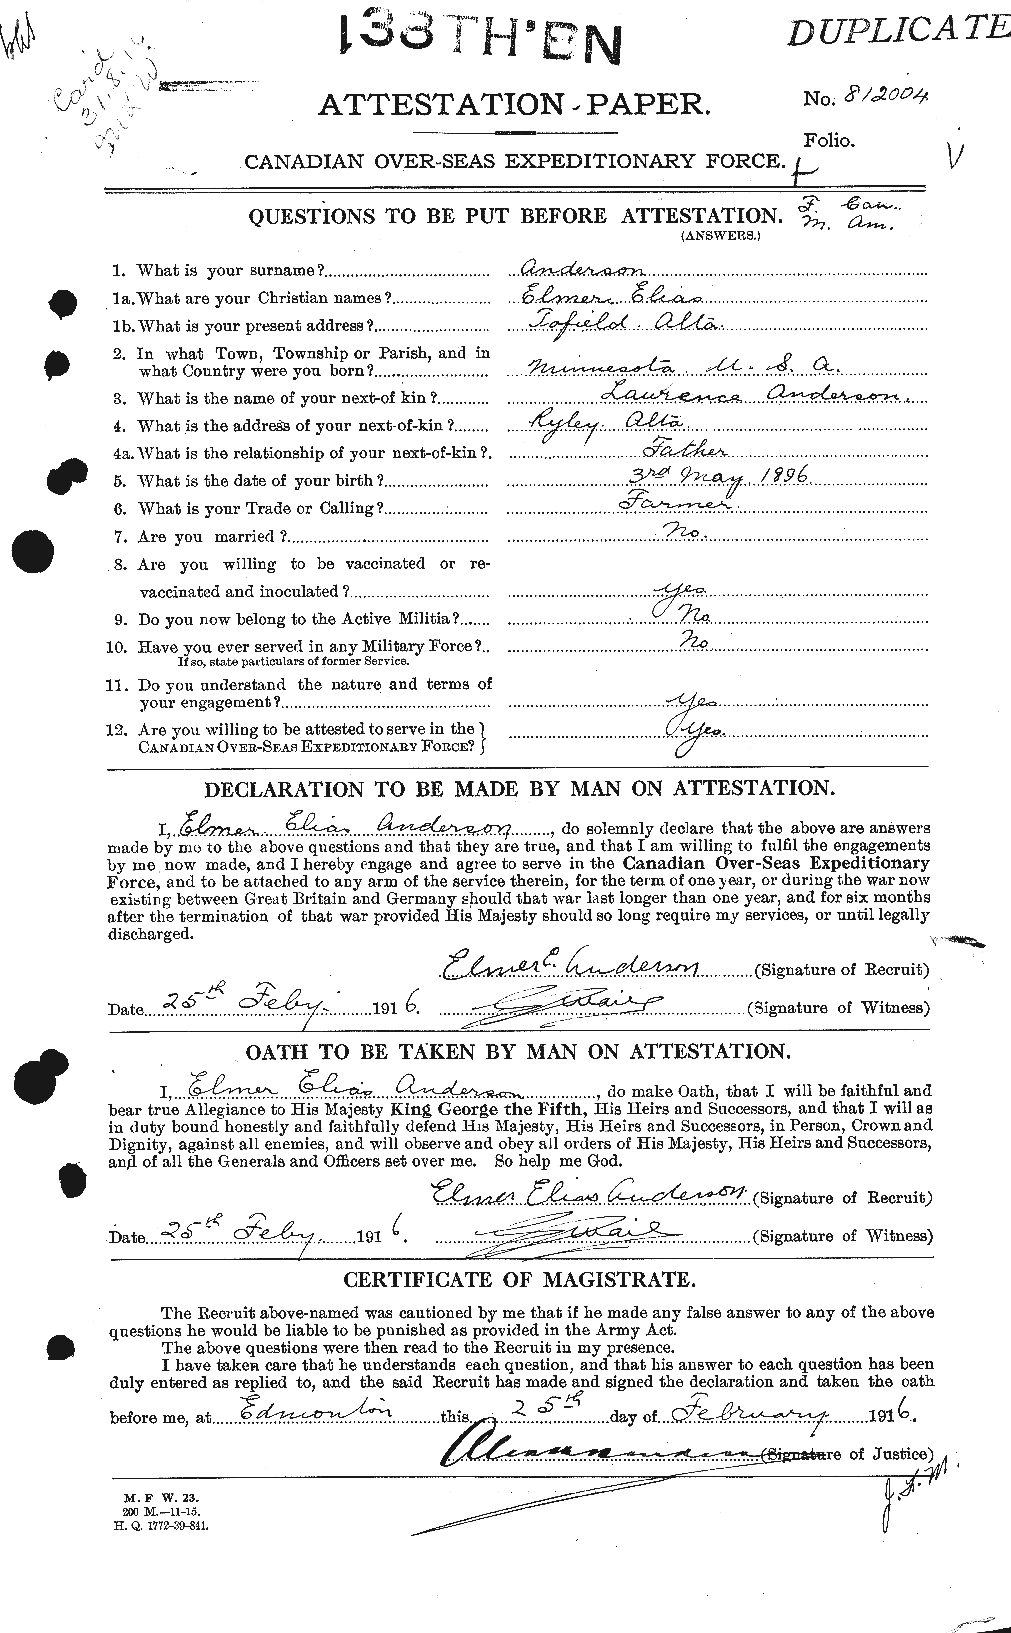 Dossiers du Personnel de la Première Guerre mondiale - CEC 209914a